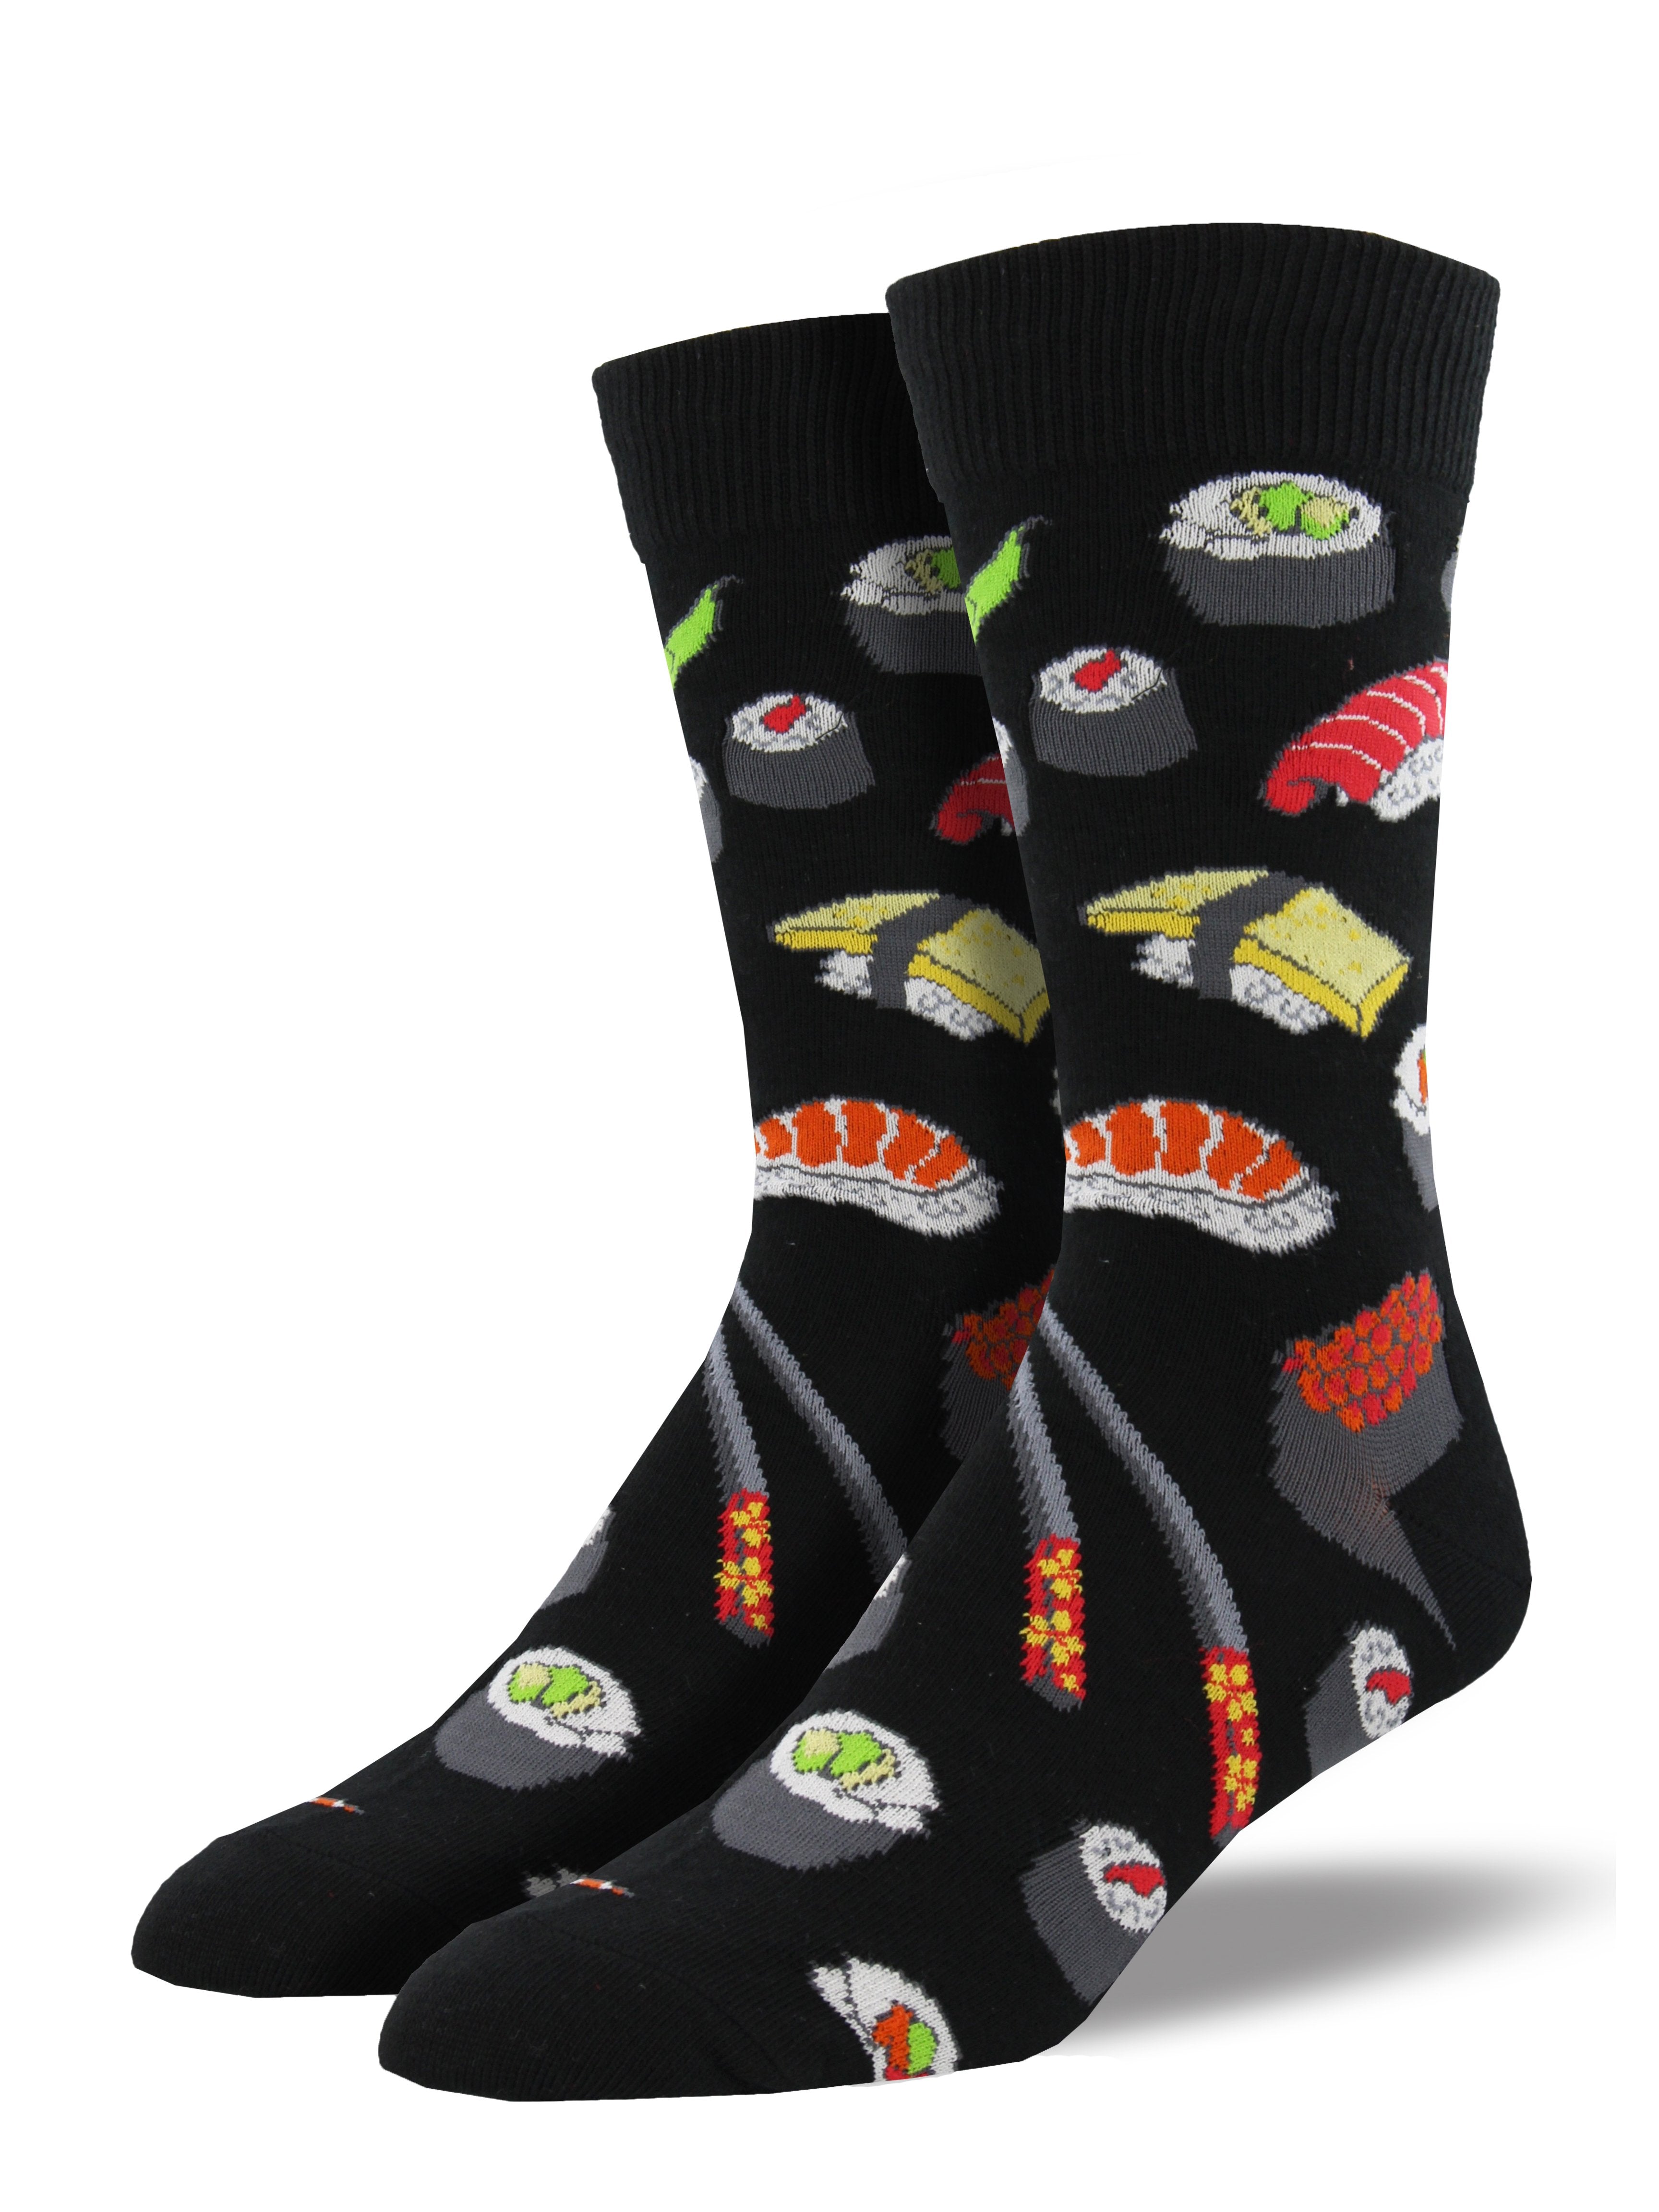 Men's "Sushi" Socks